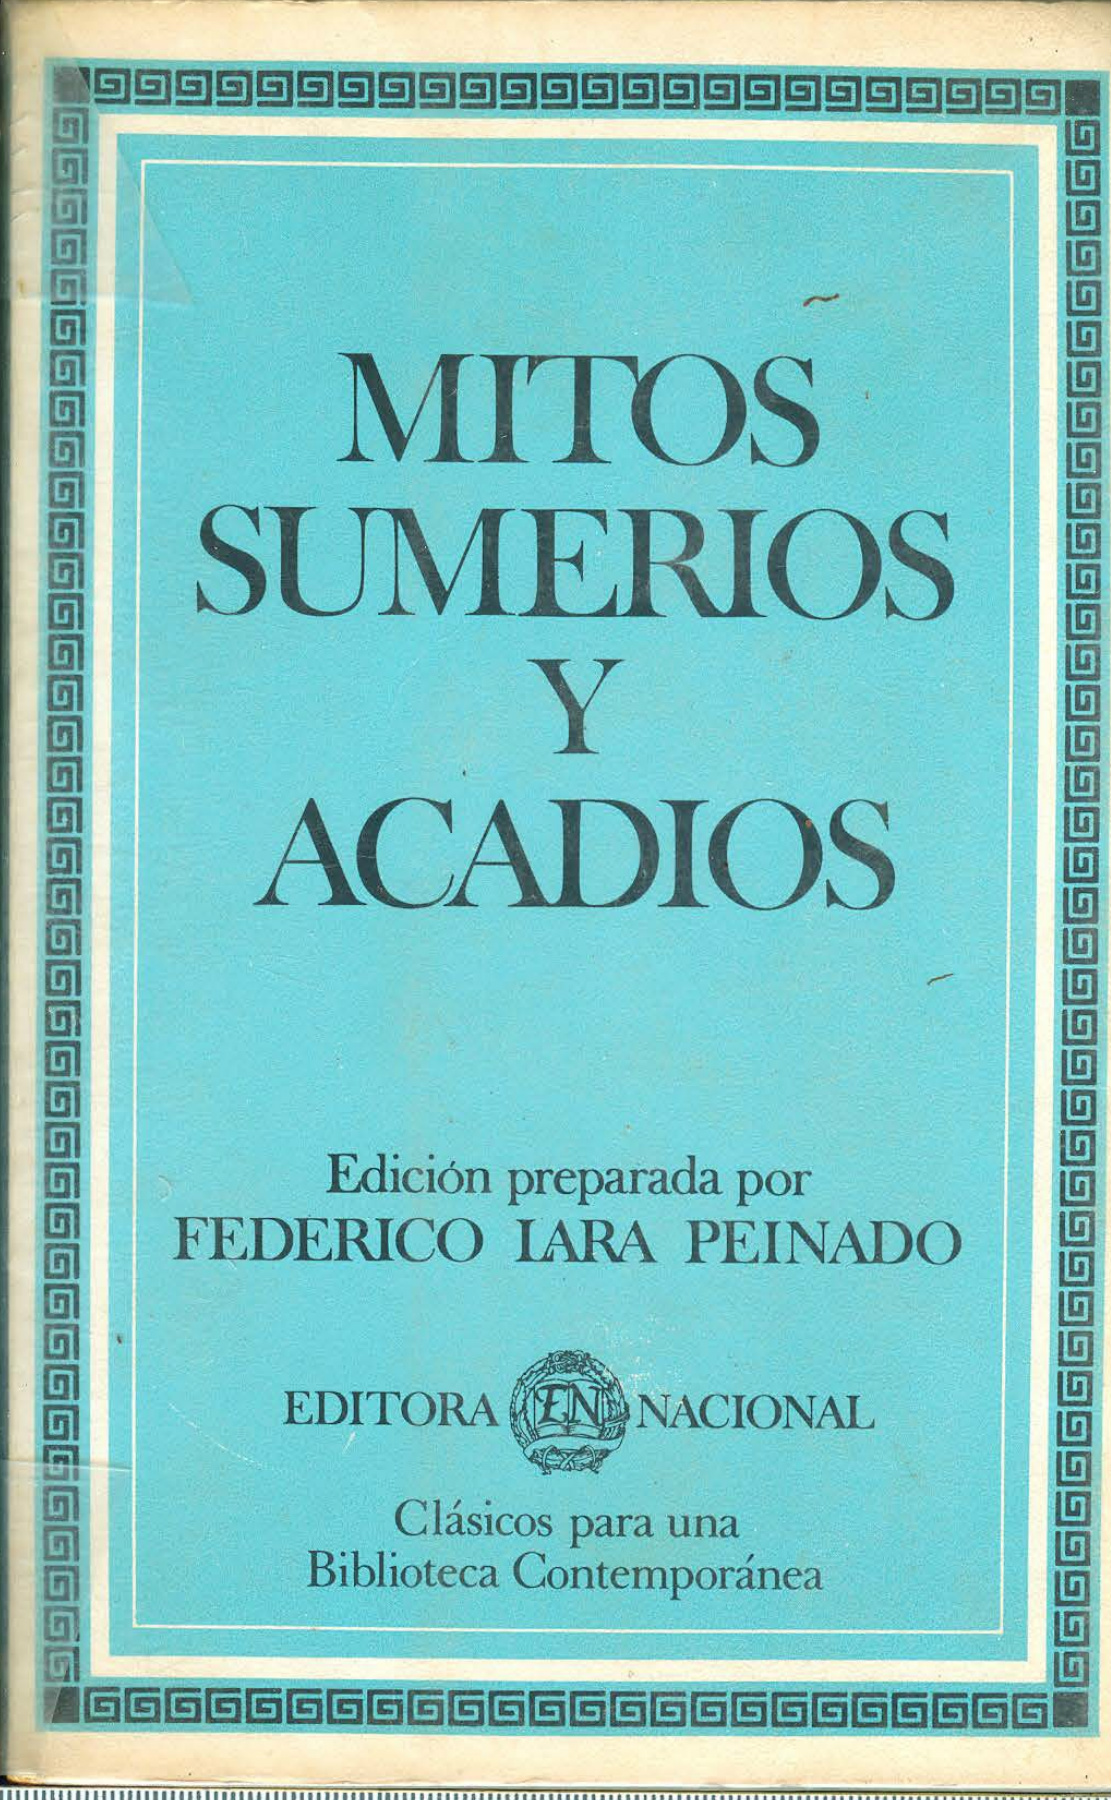 Federico Lara Peinado - Mitos sumerios y acadios - Flip PDF | FlipBuilder